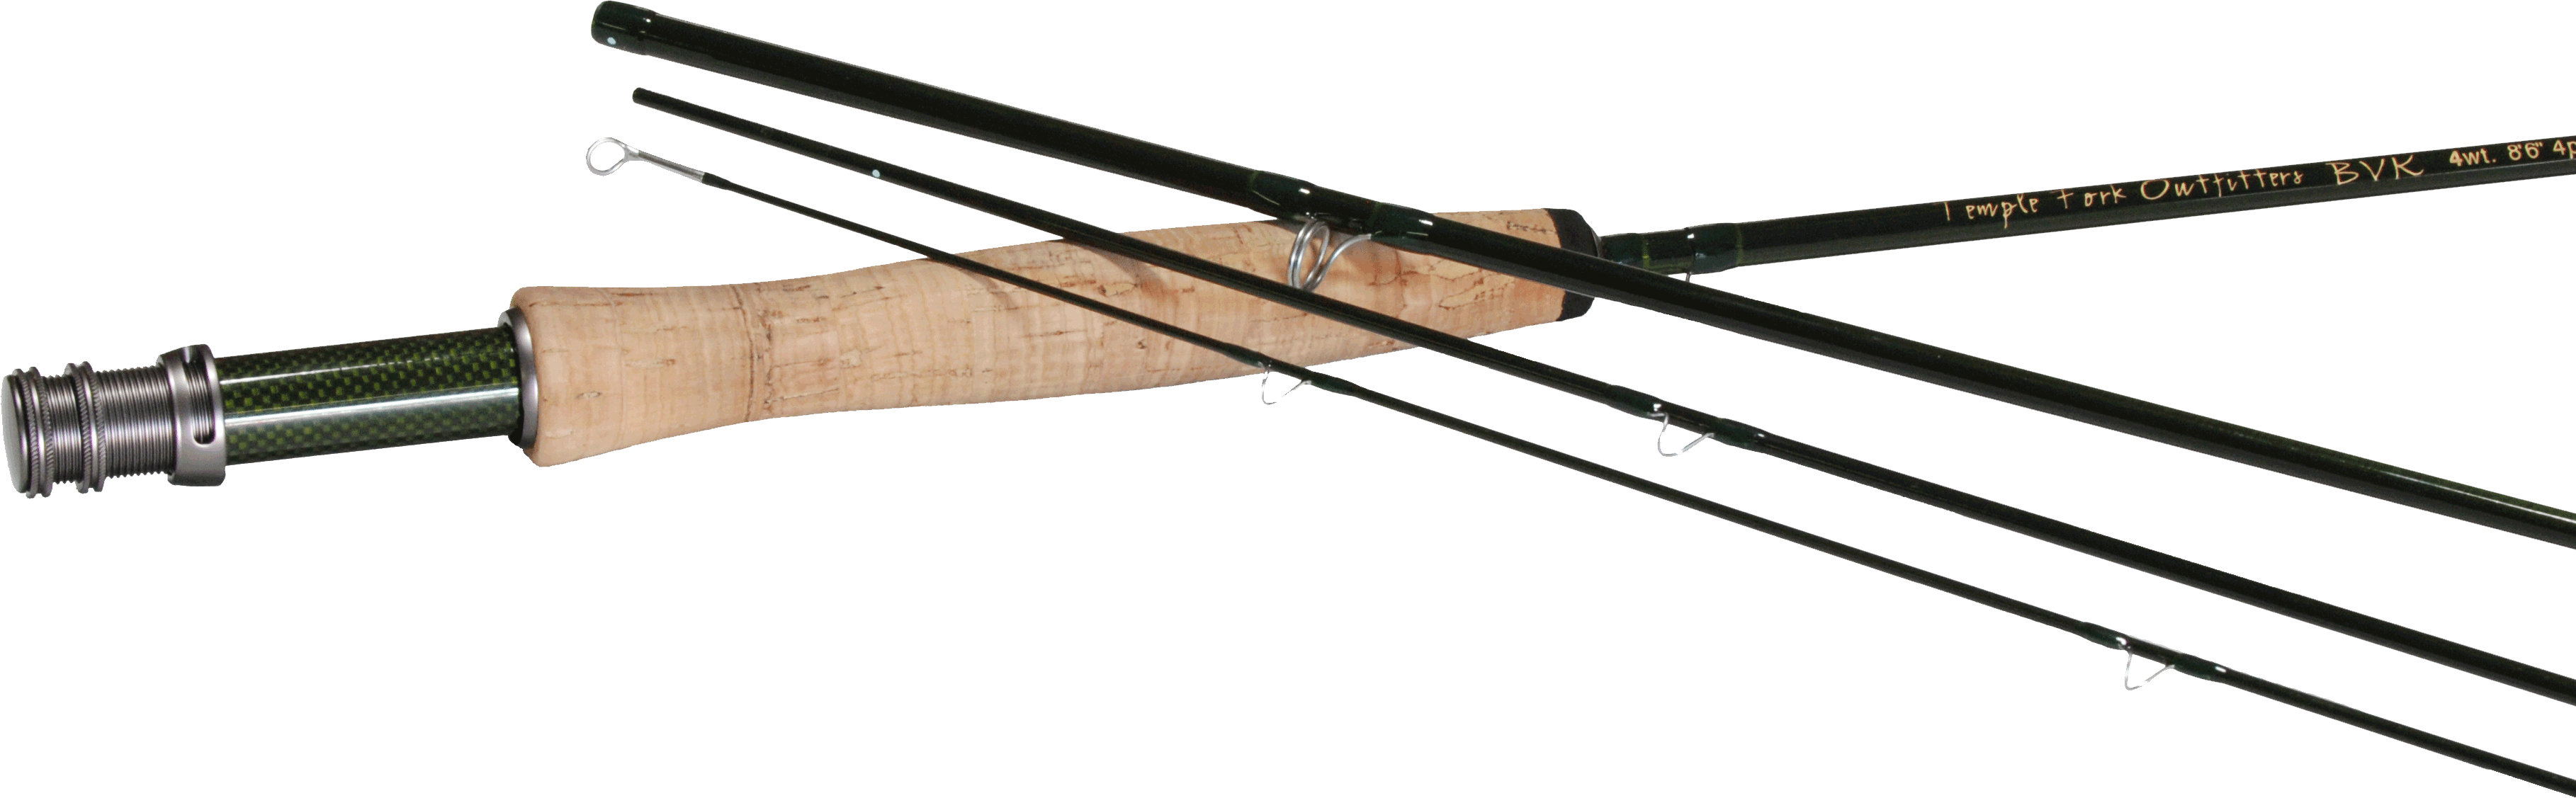 Temple Fork BVK 8wt Fly Rod Custom Built for You TFO 